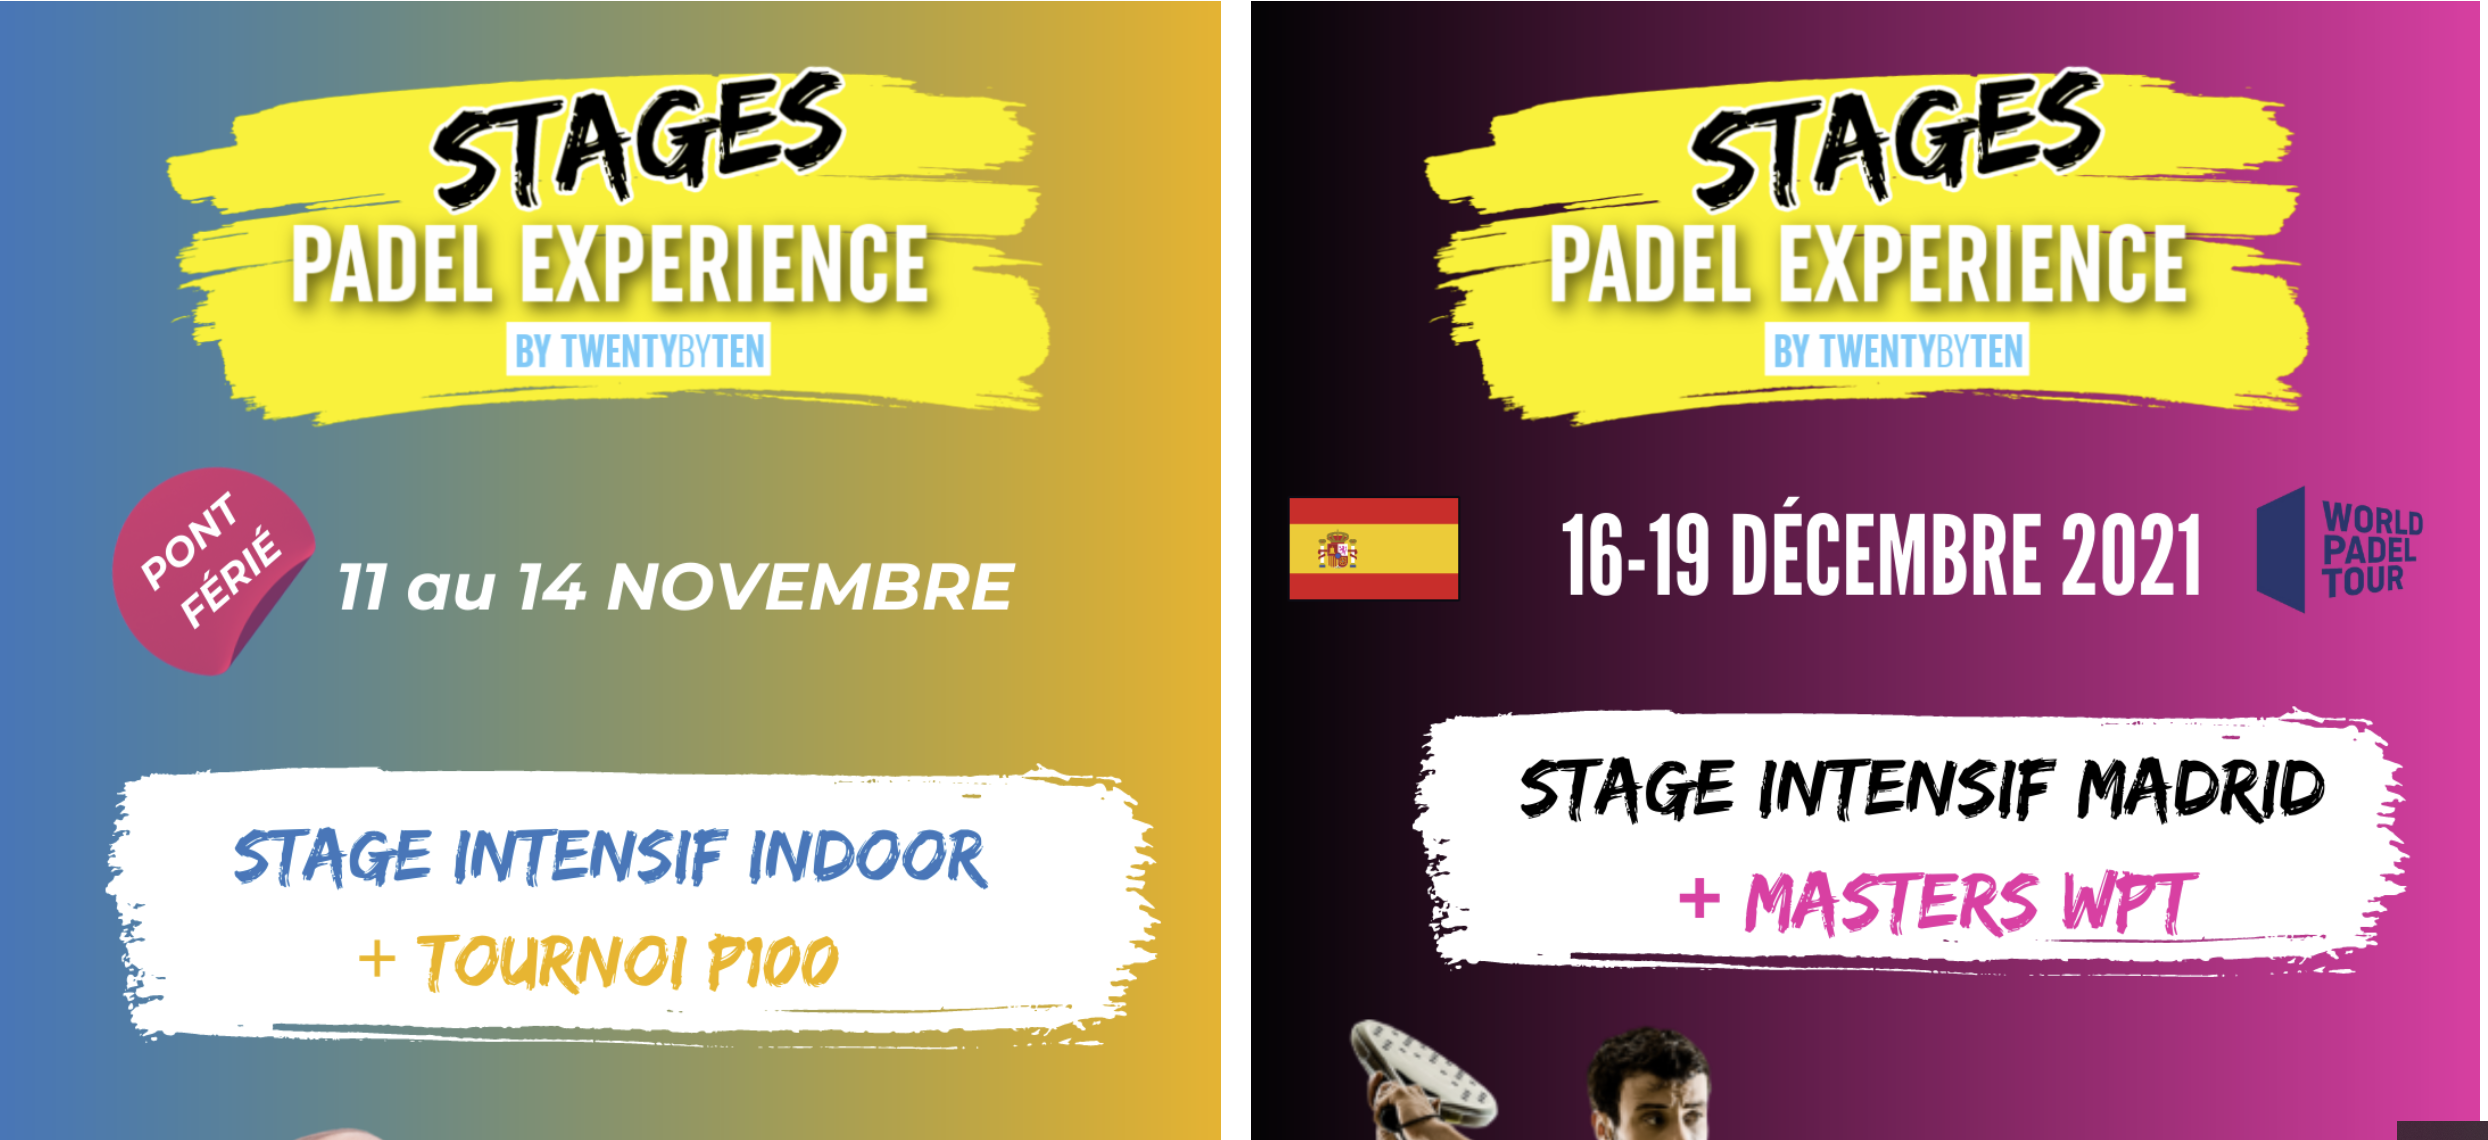 Padel Erfahrung: 2 Praktika padel in Lyon und Madrid